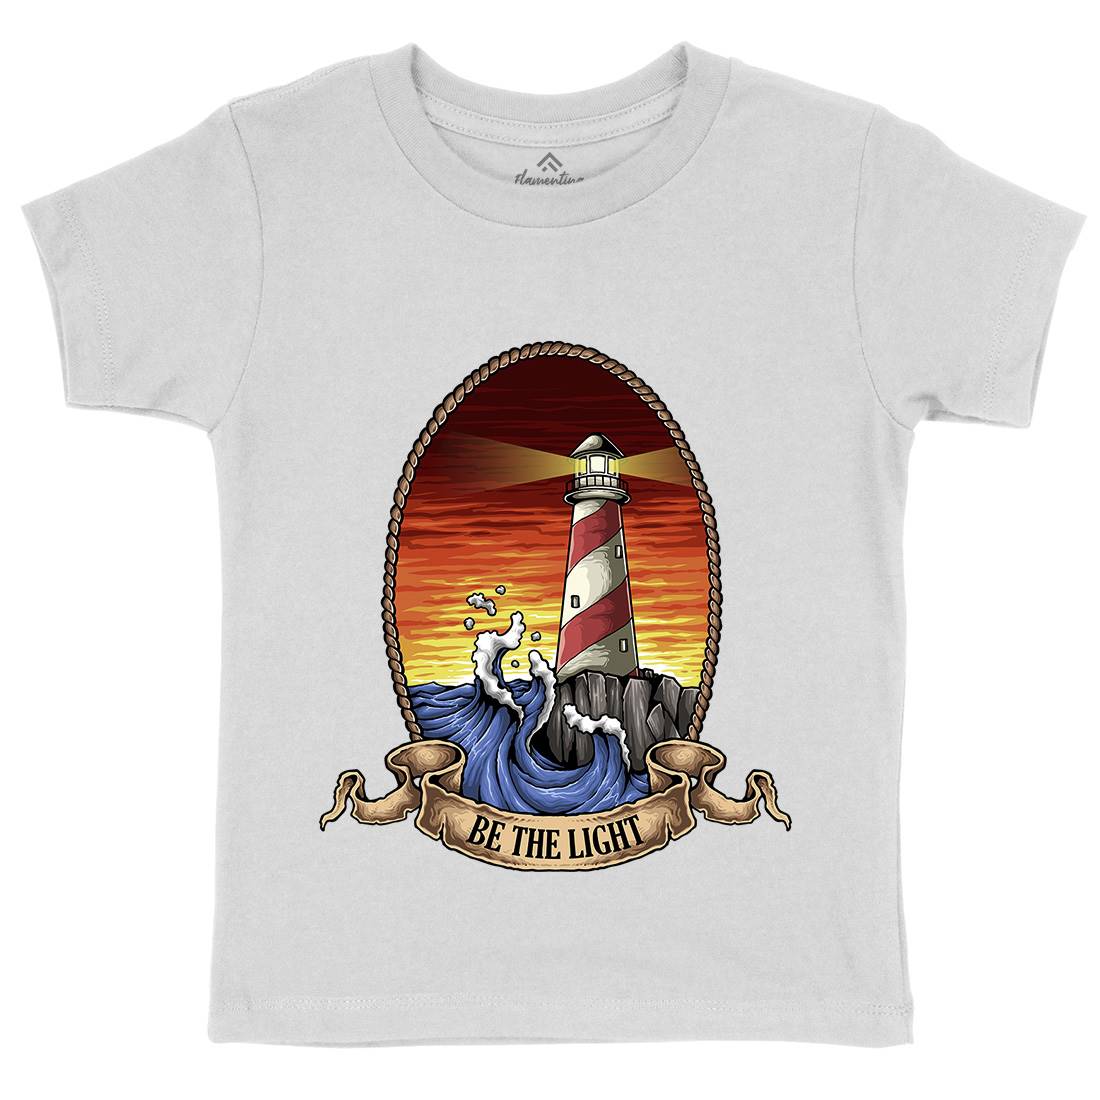 Lighthouse Kids Organic Crew Neck T-Shirt Navy A433